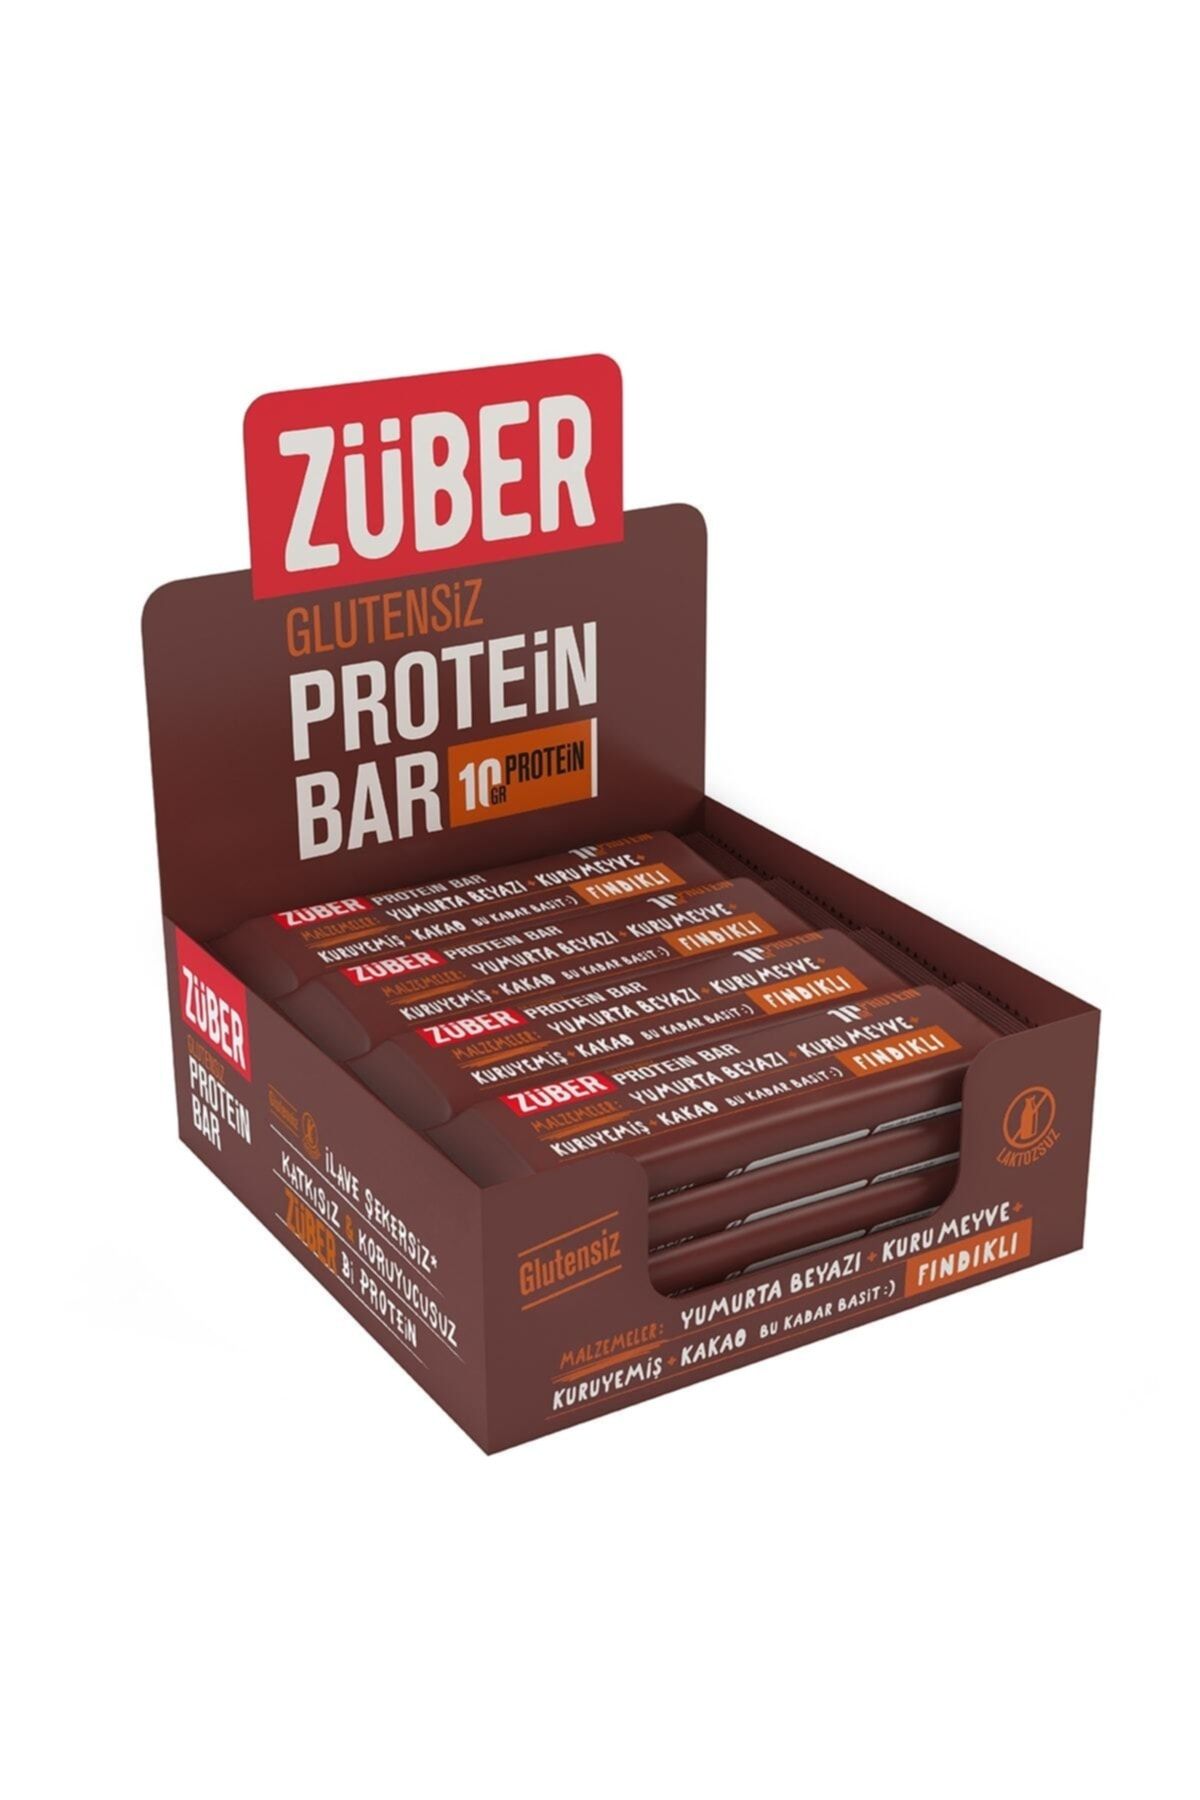 Züber Fındıklı Protein Bar Vegan Glutensiz Doğal Lif Kaynağı 35 Gr X 12 Avantaj Paket